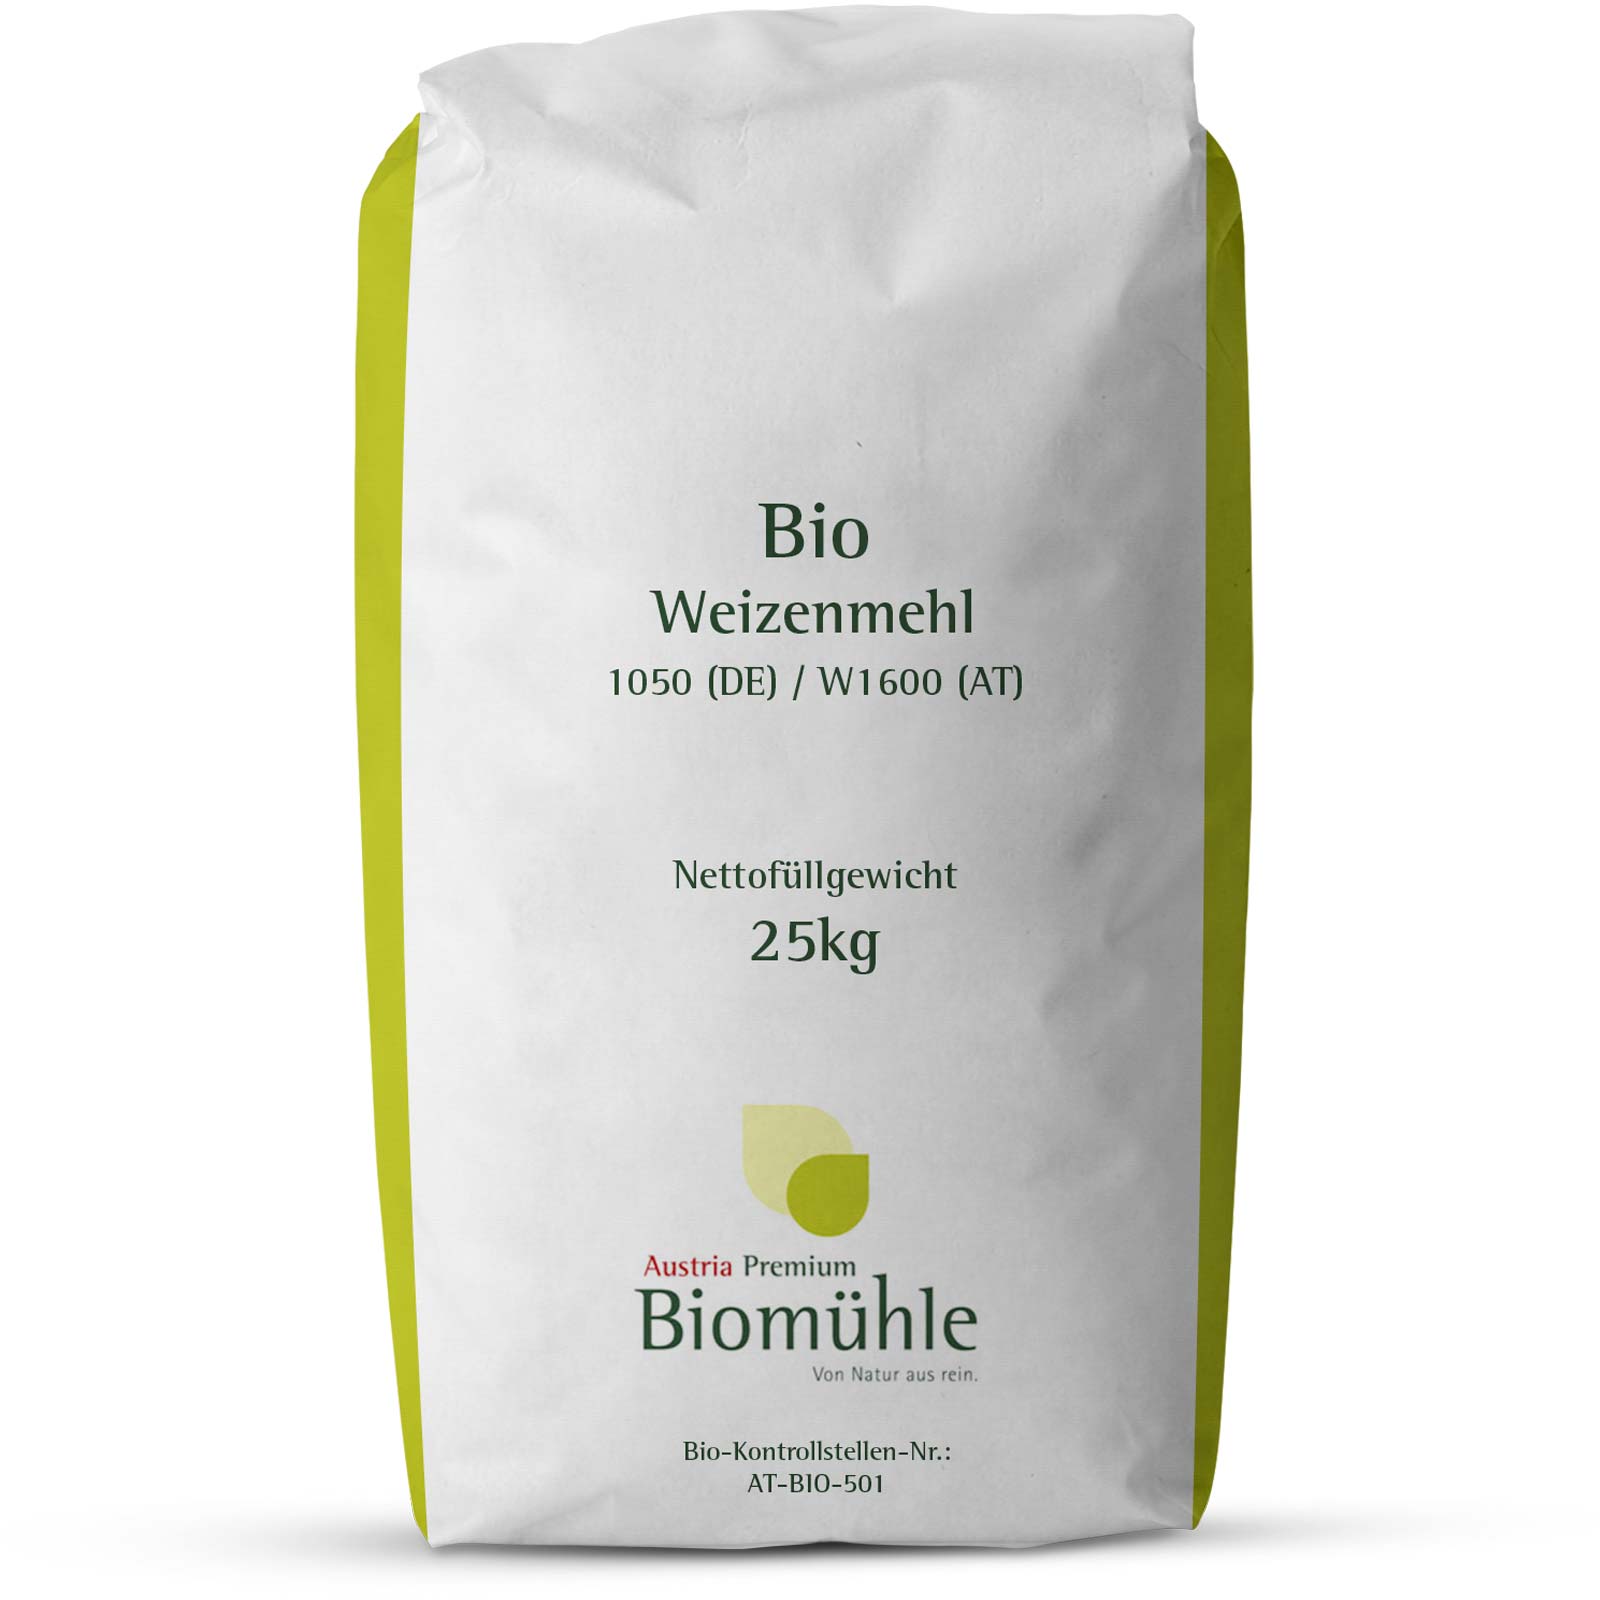 Bio Weizenmehl Type 1050 / W1600 25 kg